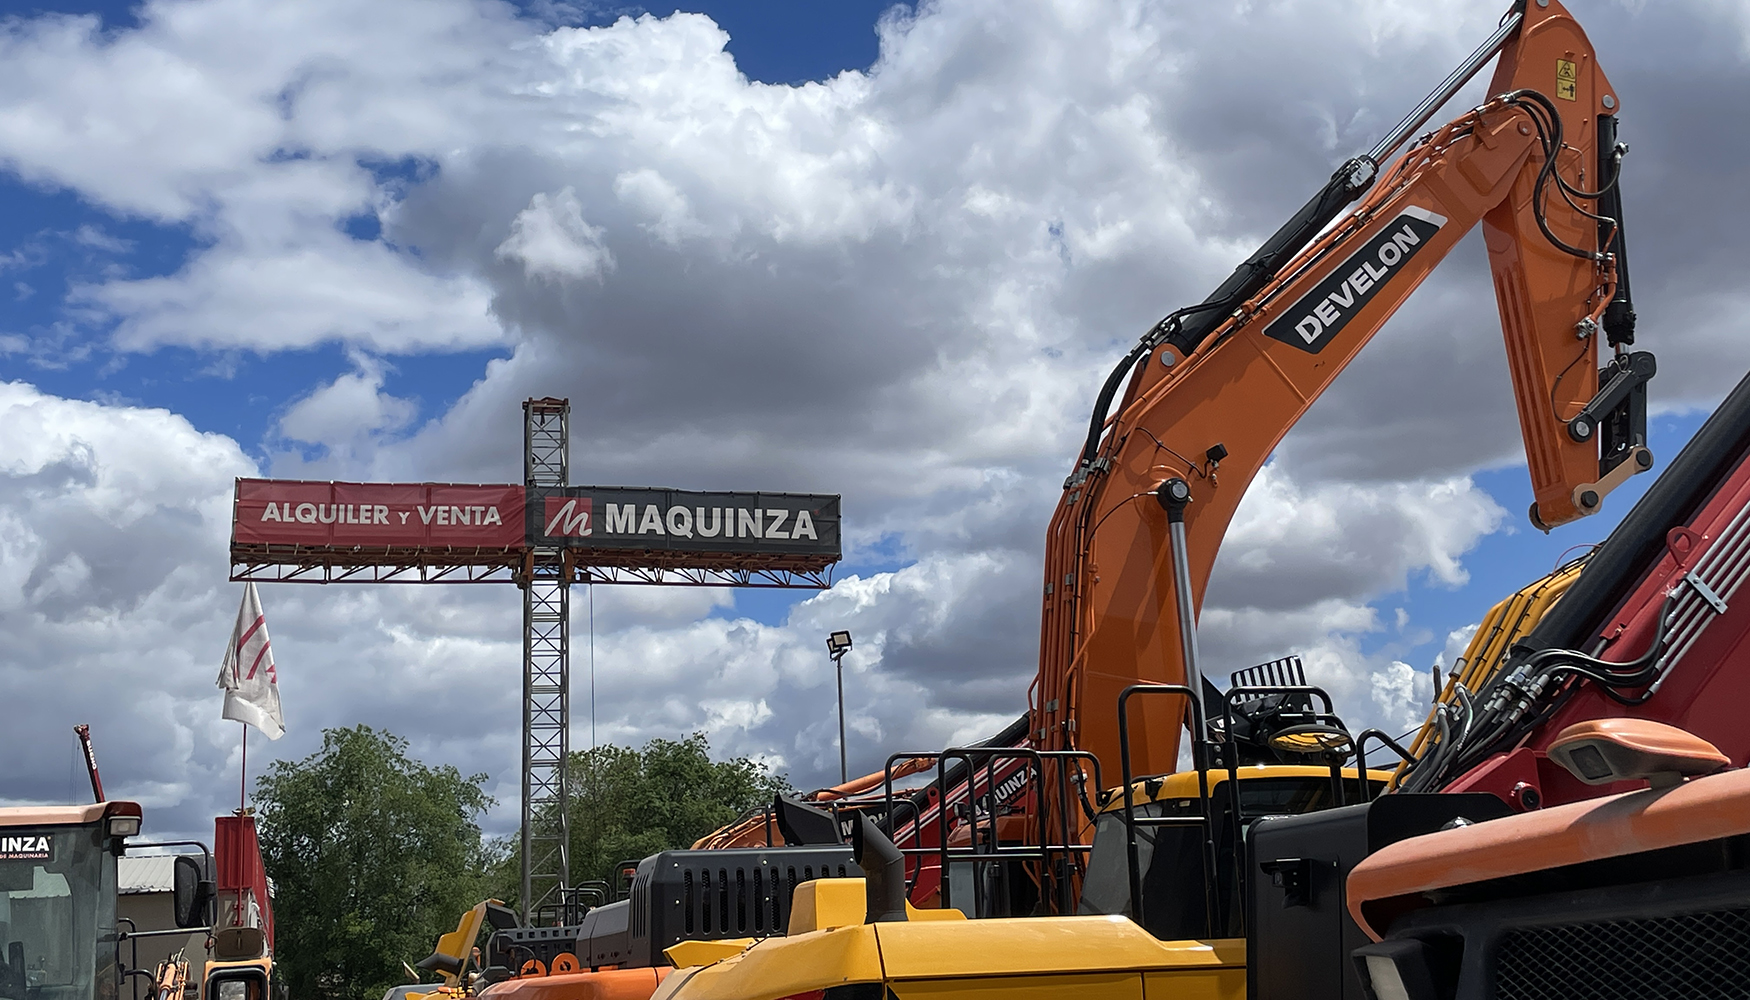 La primera excavadora Develon que llega a Espaa ya est en las instalaciones de Maquinza